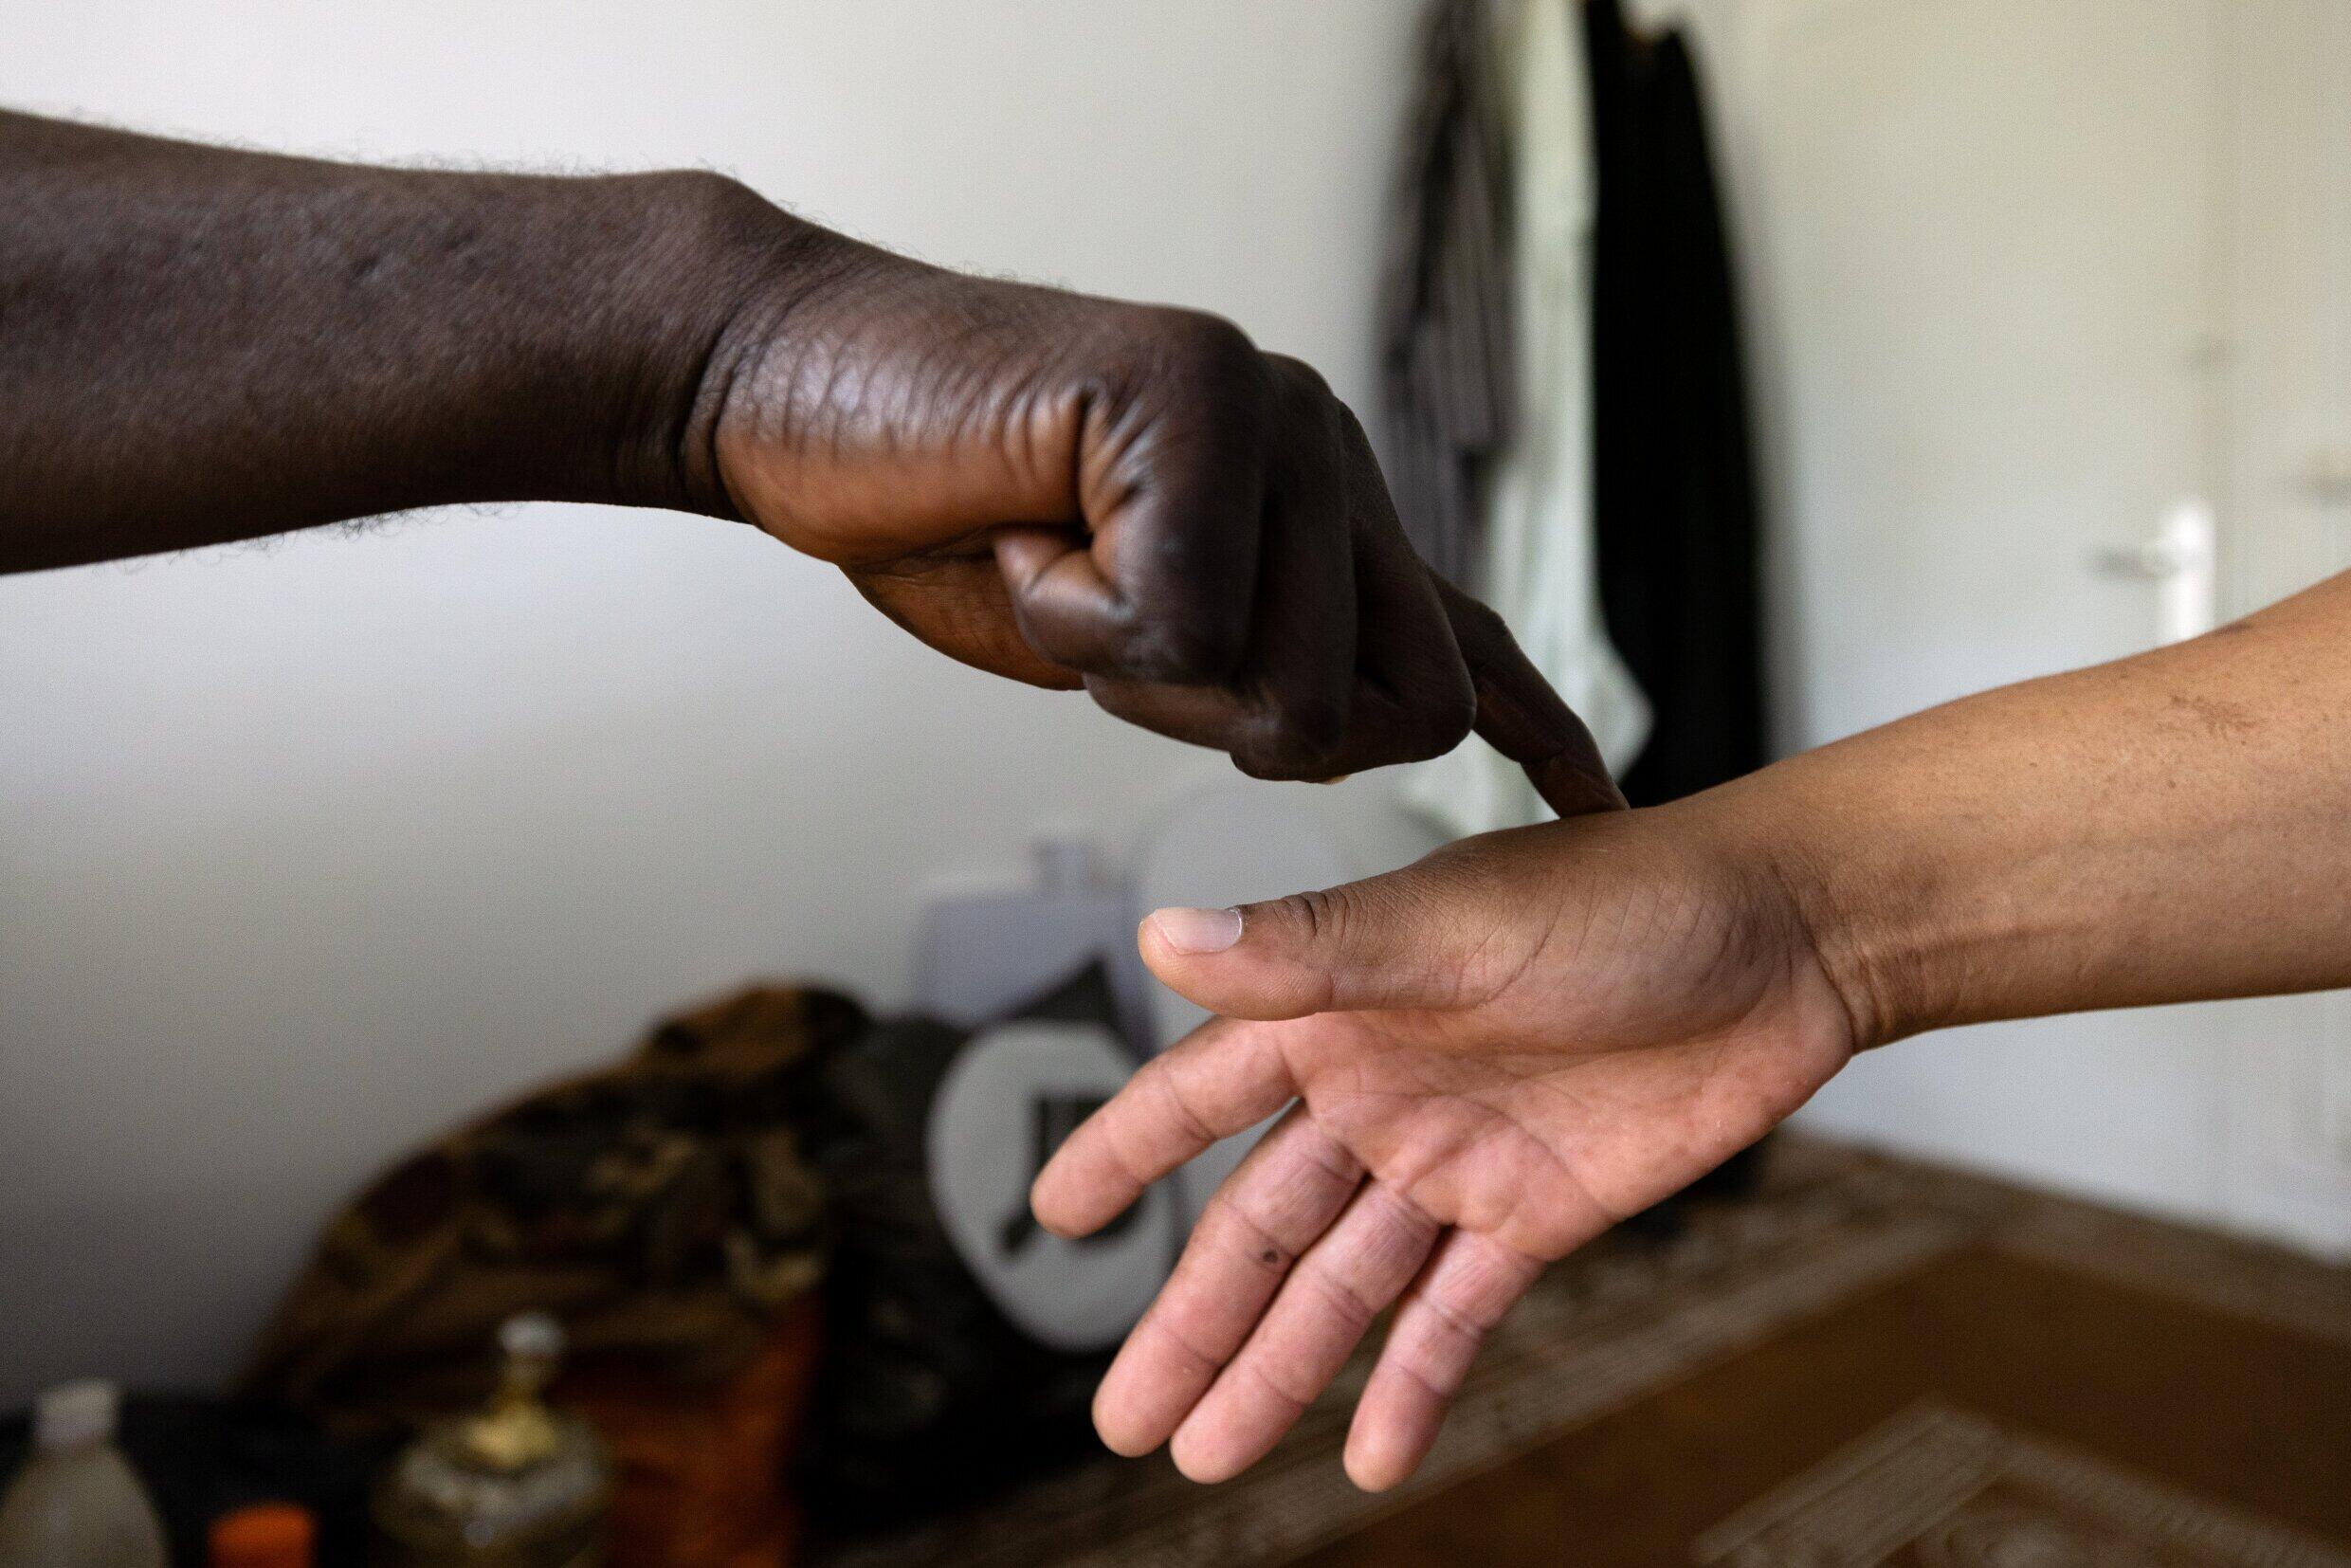 Der afrikanische Wunderheiler Sheikh Issa testet vor einer Beratung die Hand seines Klienten Raymond.